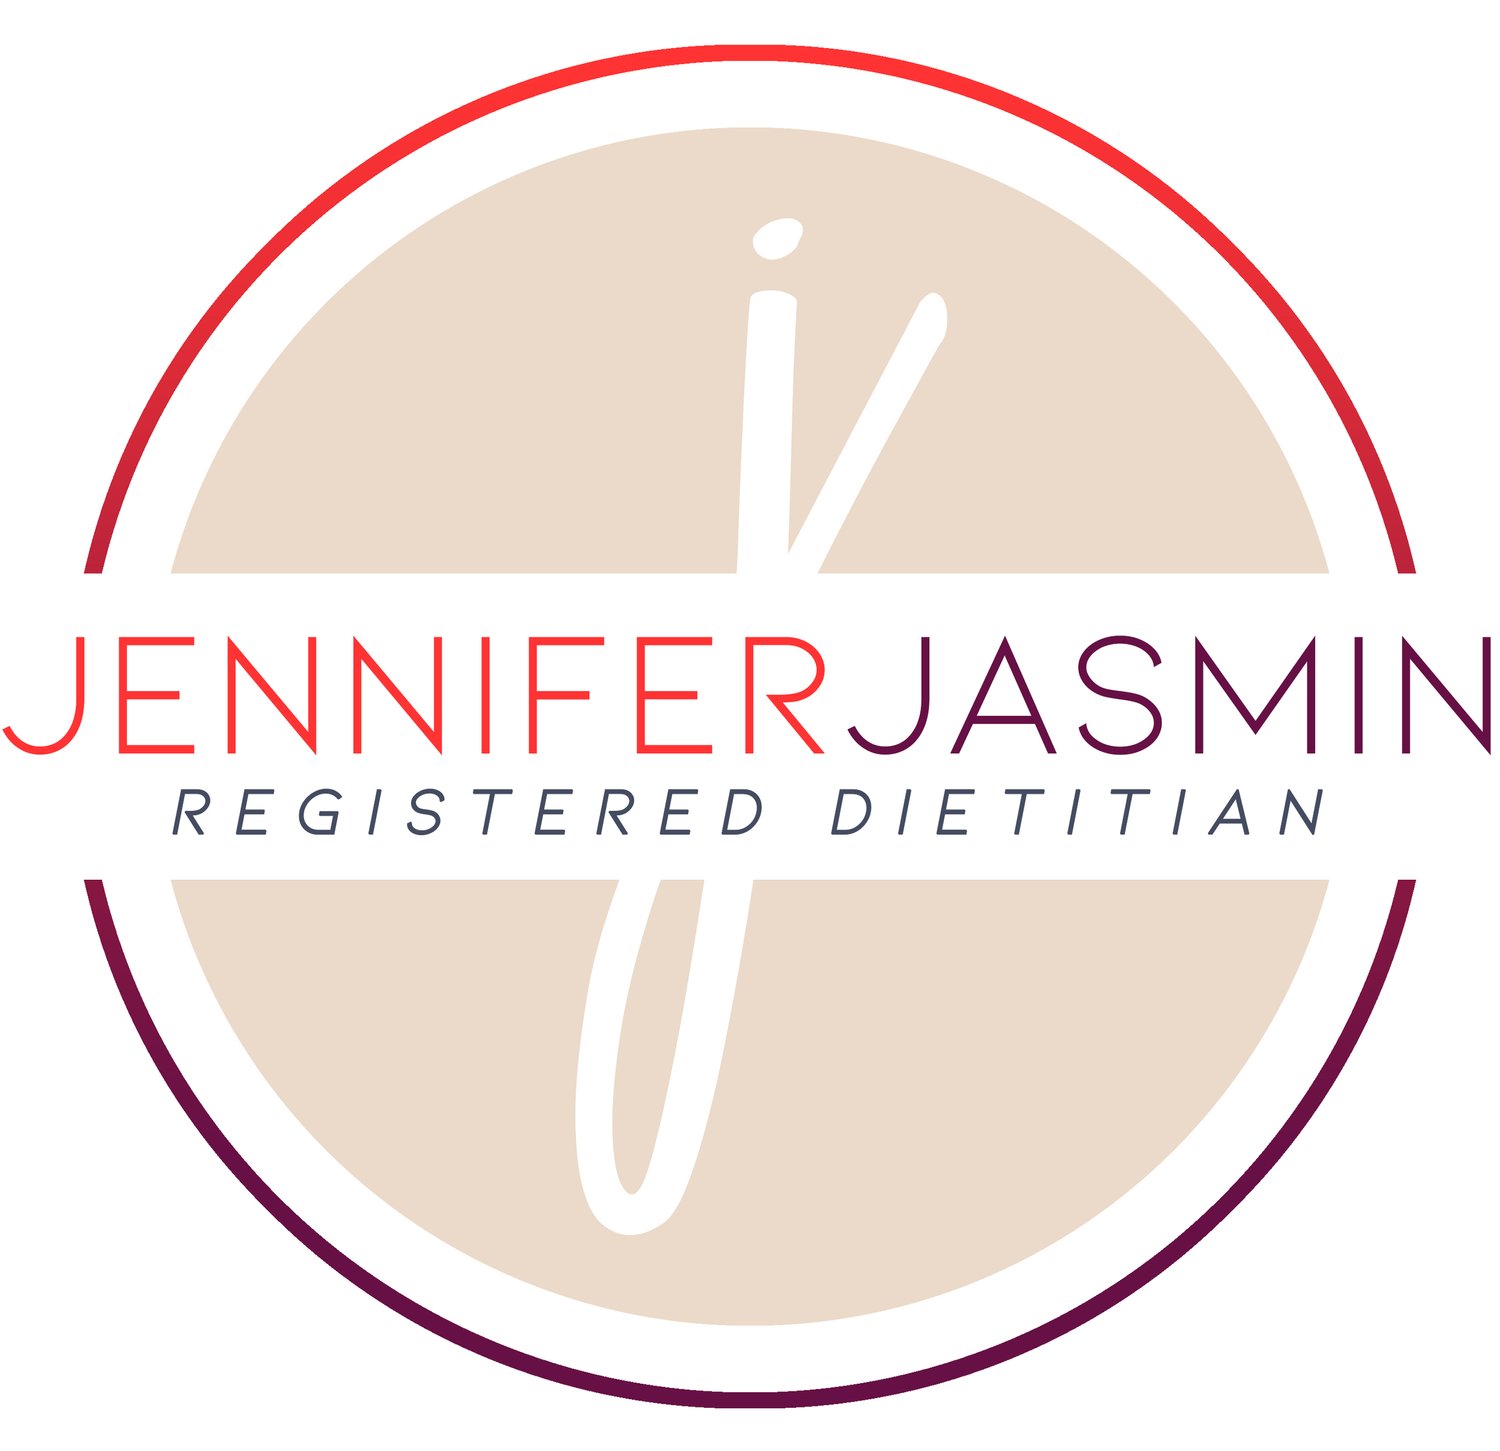 JENNIFER JASMIN - REGISTERED DIETITIAN, LDN